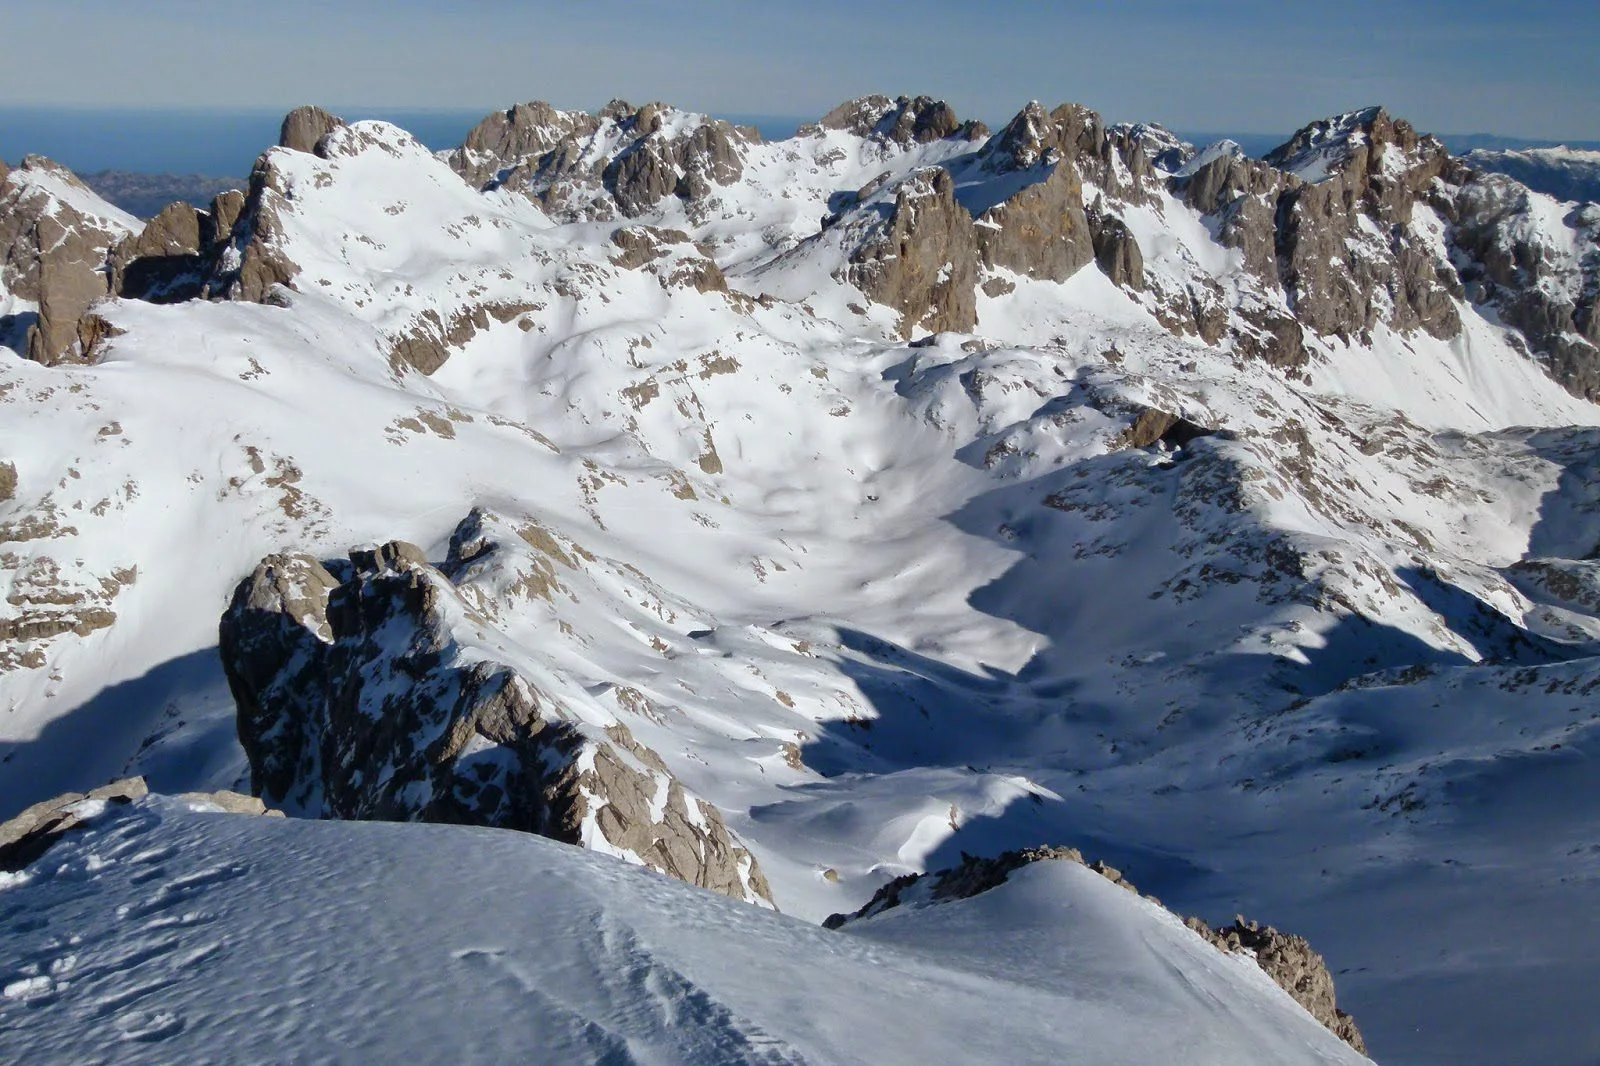 Gafas de esquí en el pico de la montaña